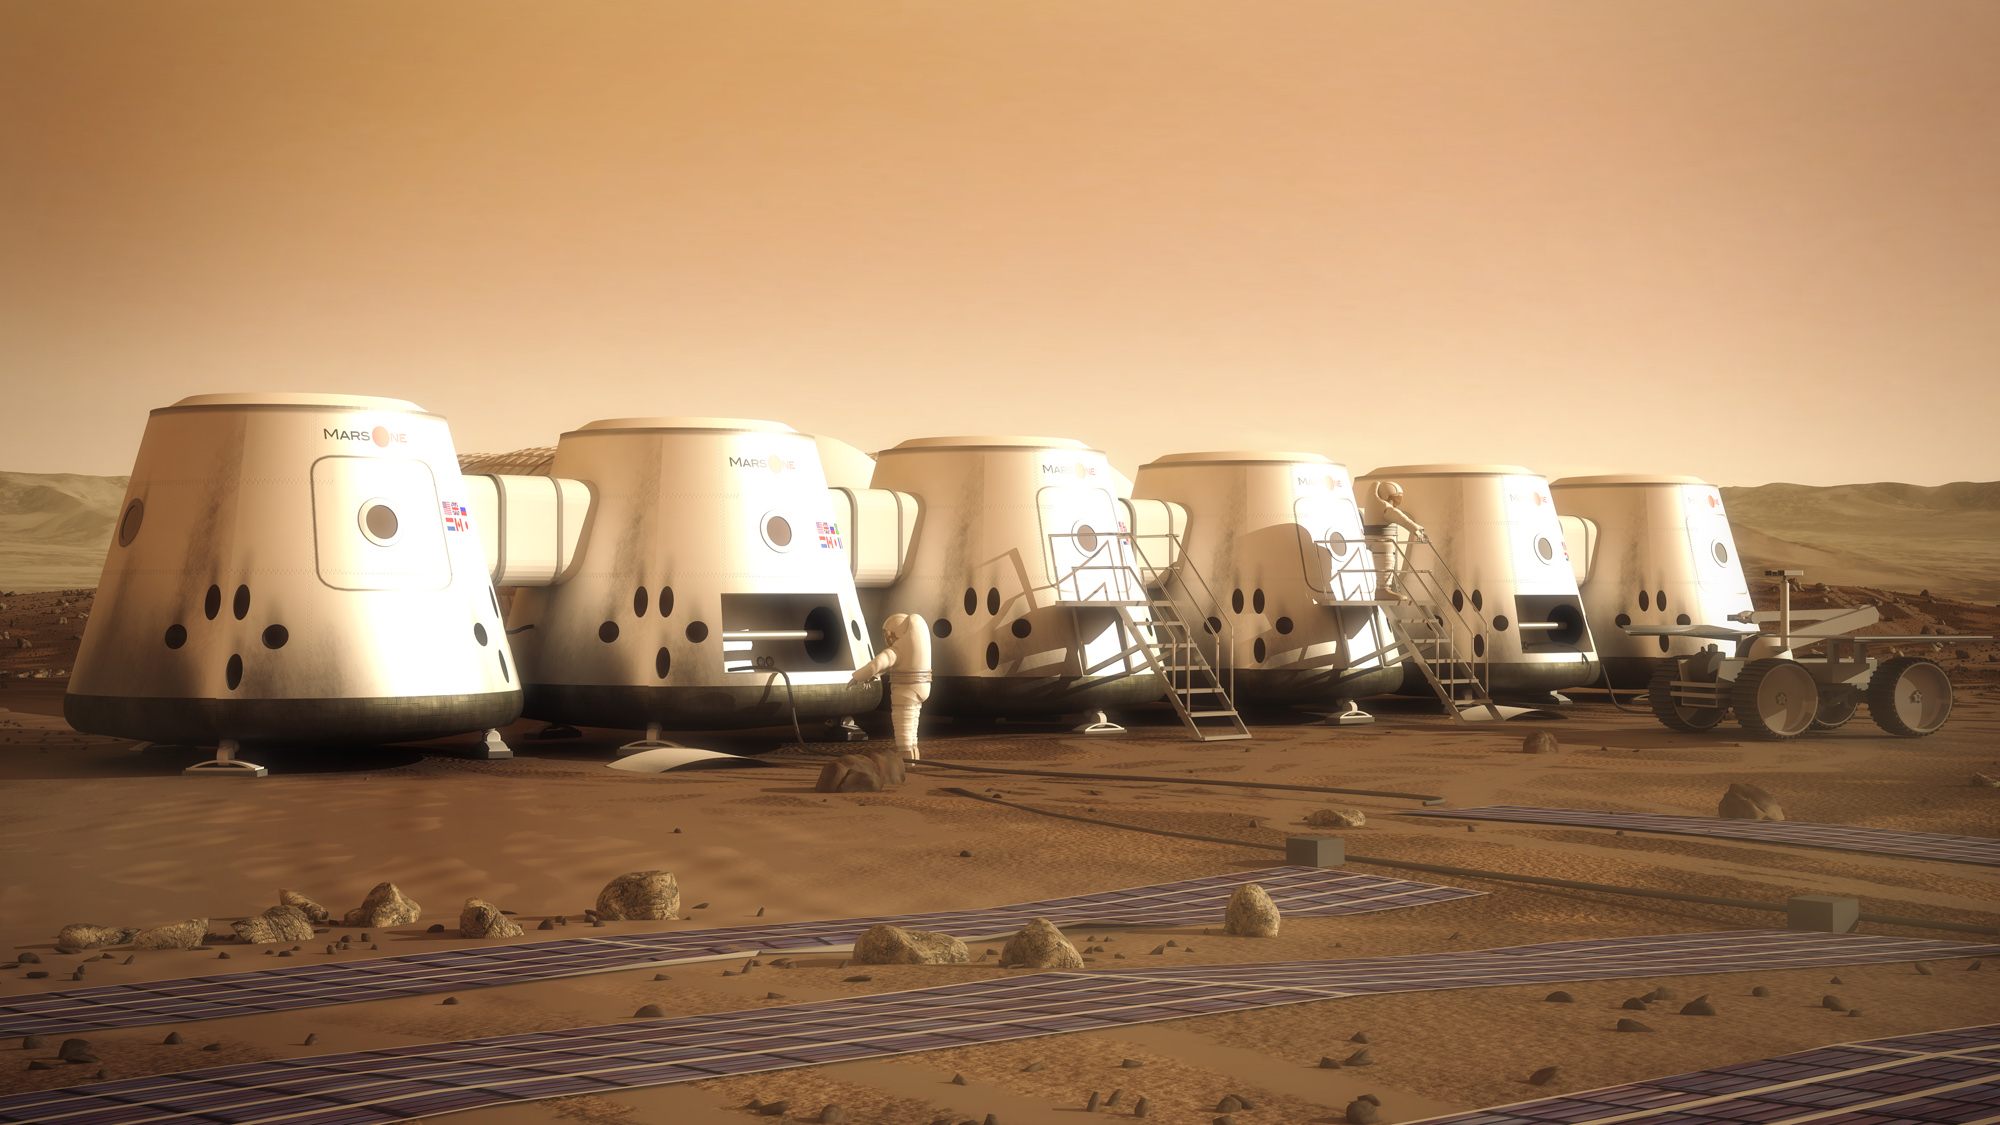 Прием заявок на участие в колонизации Марса идет полным ходом